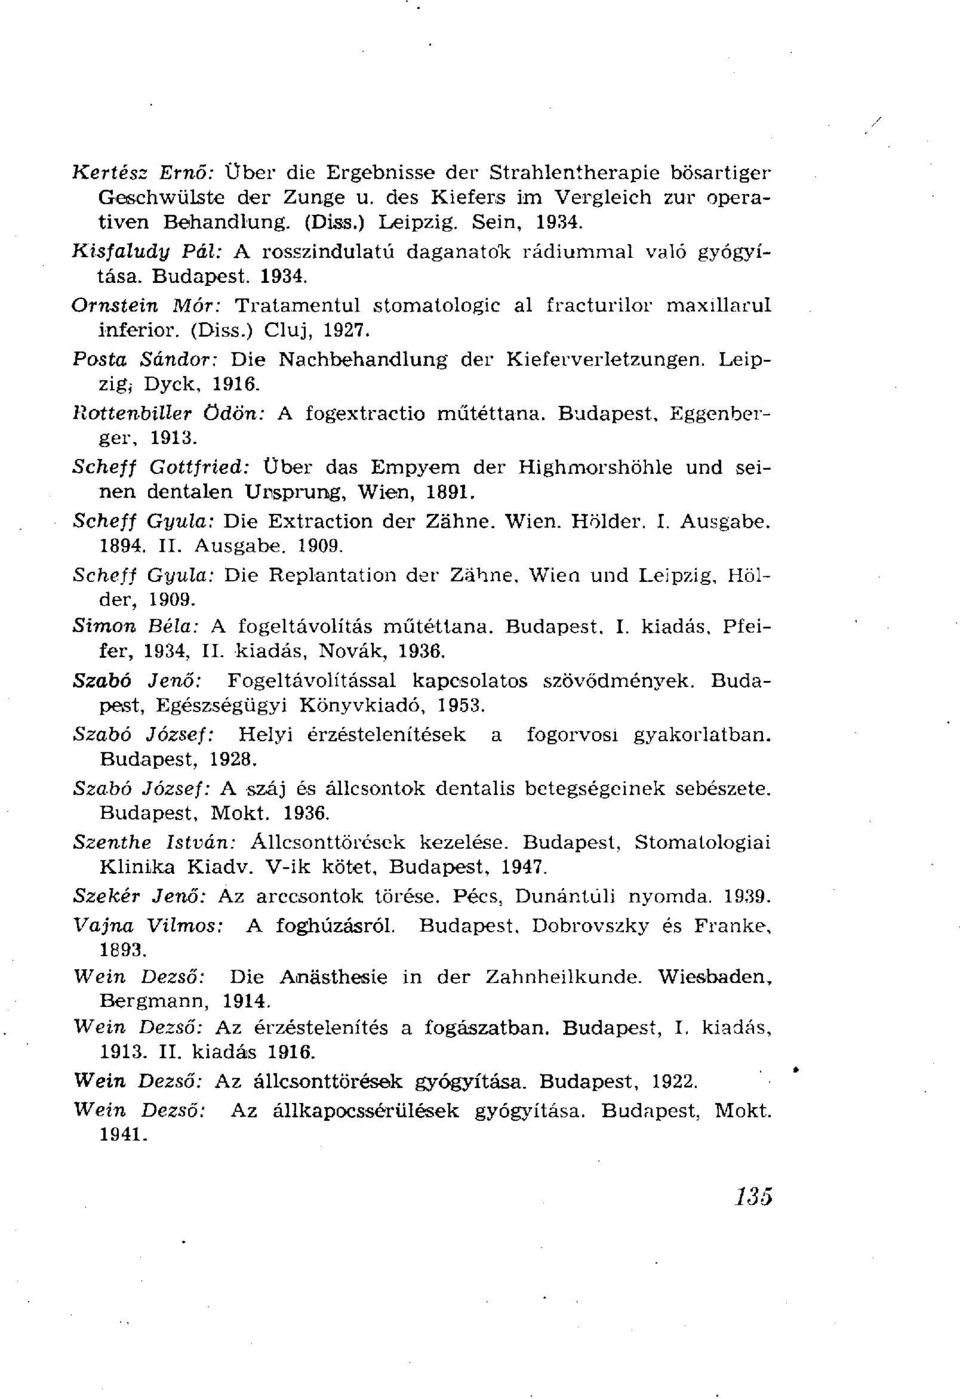 Posta Sándor: Die Nachbehandlung der Kieferverletzungen. Leipzig, Dyck, 1916. Rottenbiller Ödön: A fogextractio műtéttana. Budapest, Eggenberger, 1913.